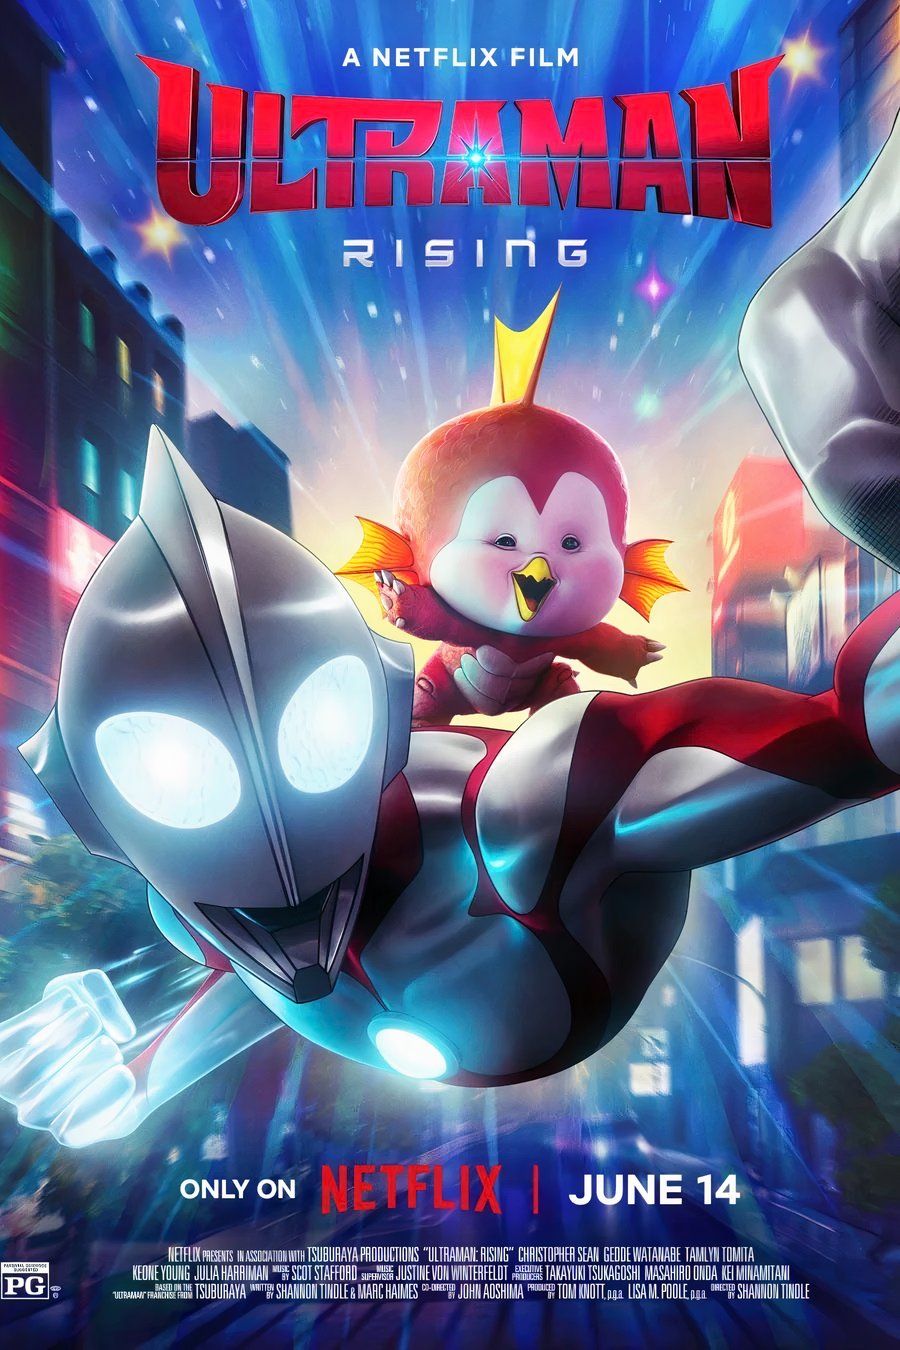 El póster de Ultraman Rising muestra a Ultraman volando por el cielo con una pequeña criatura en su espalda.